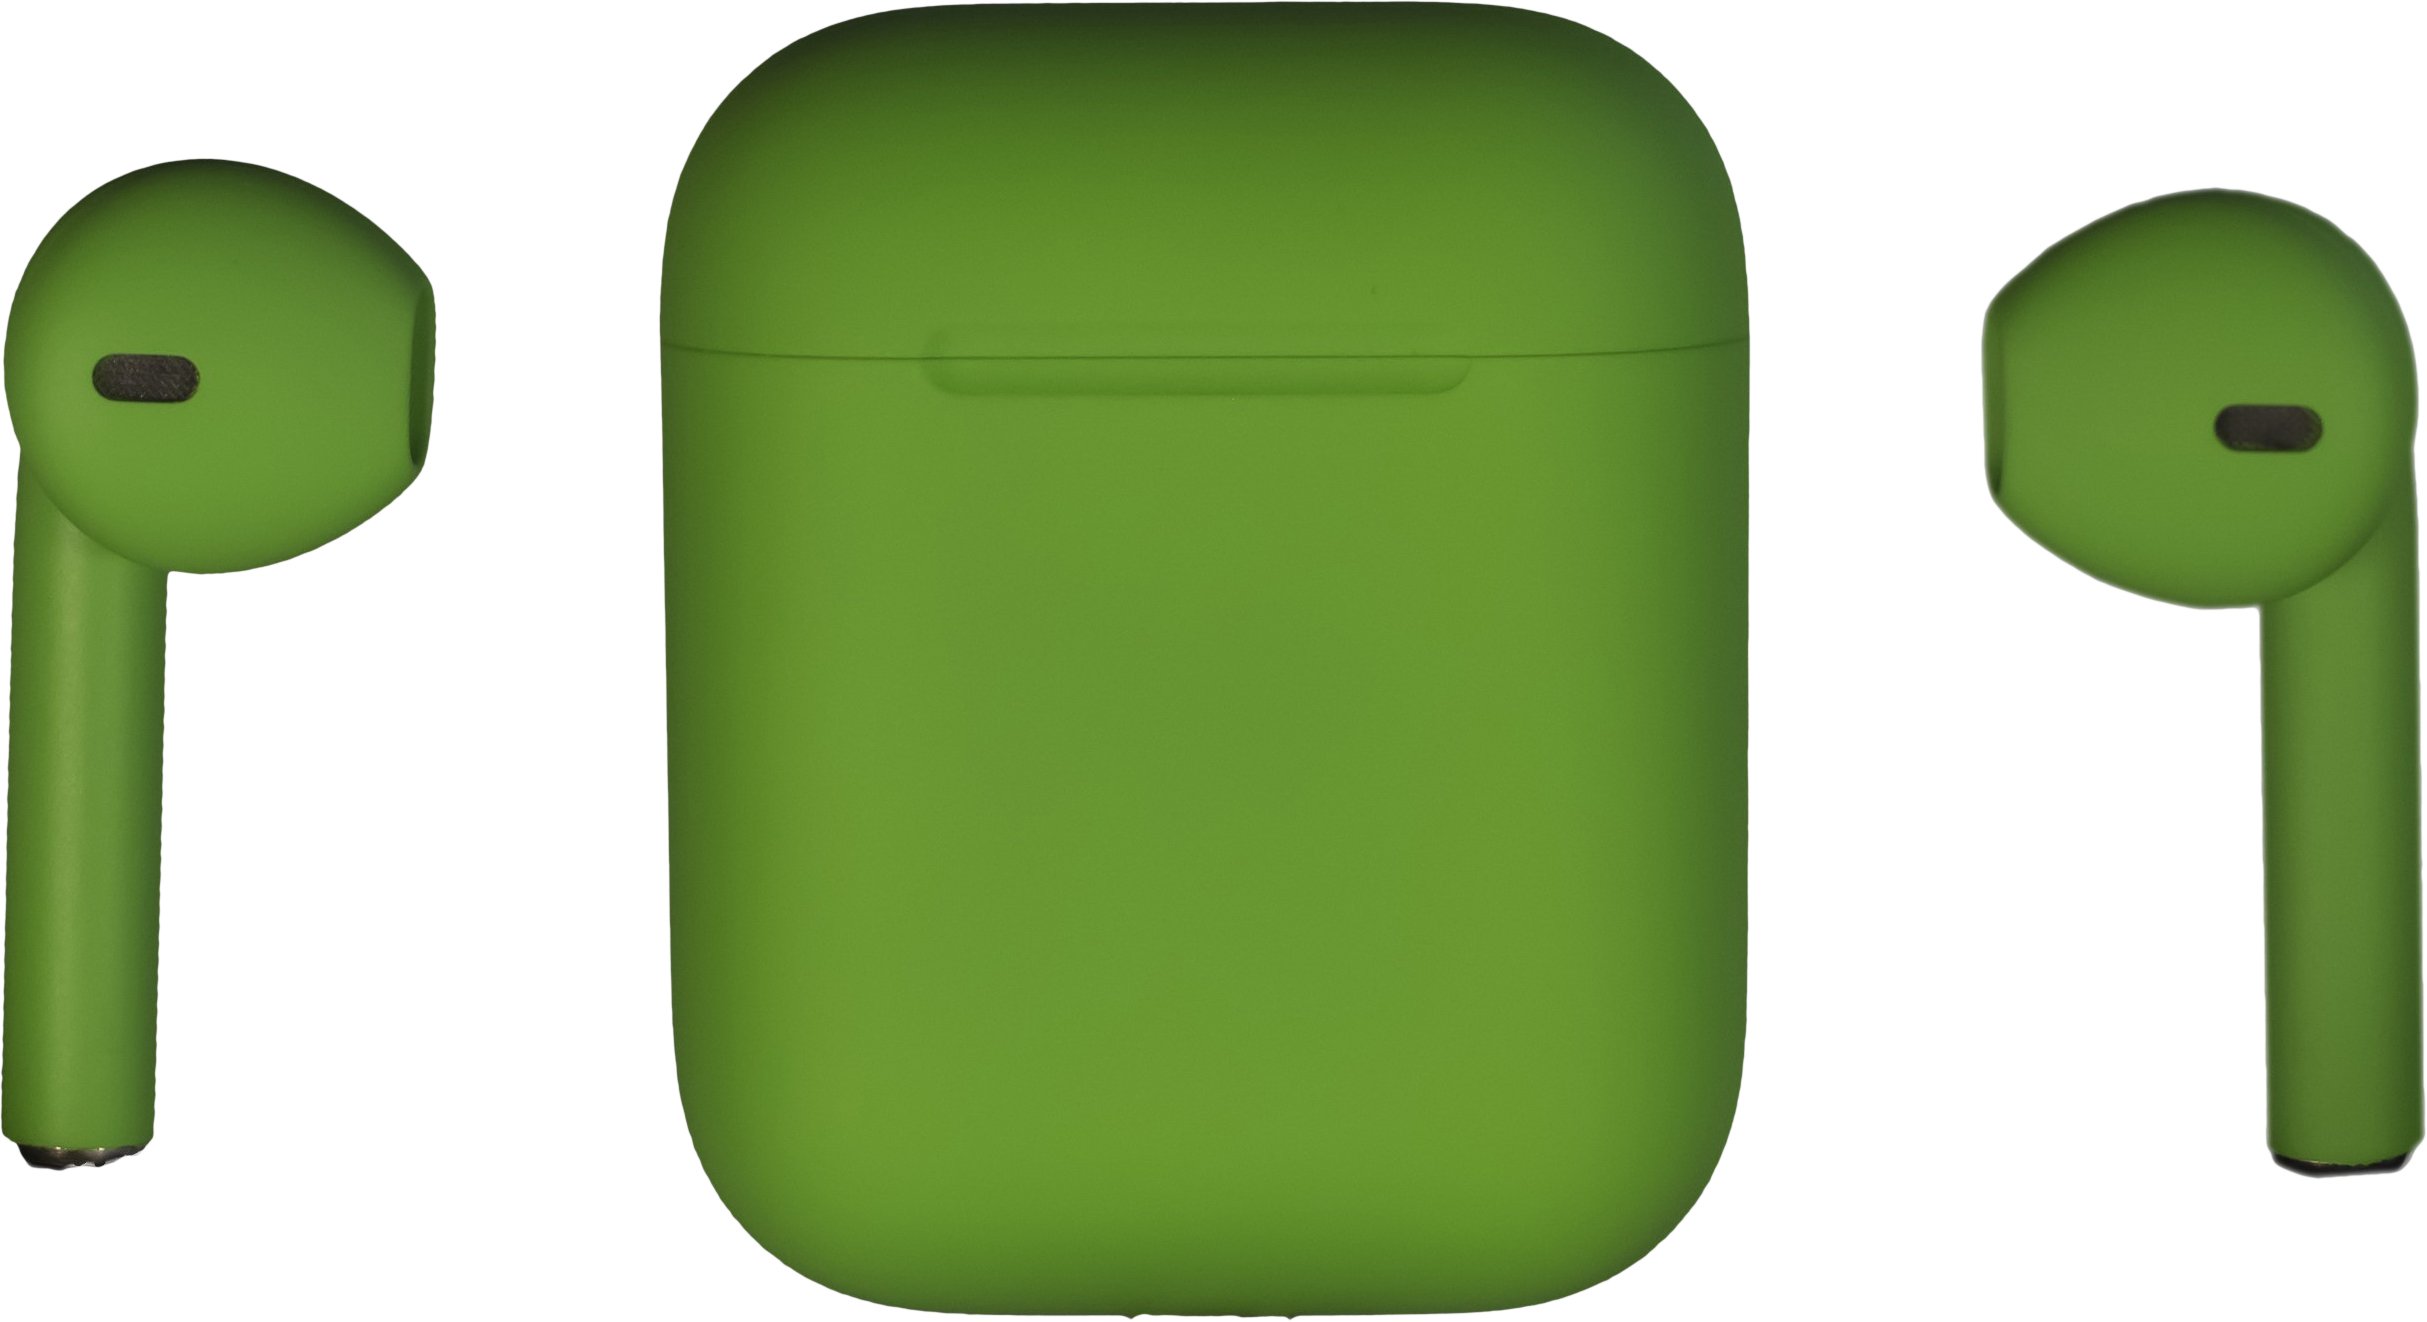 Правый аирподс. Apple AIRPODS 2 Color. Наушники Apple AIRPODS Max, зеленый. Наушники Apple беспроводные зеленые. Беспроводные наушники Apple AIRPODS Pro 2 (матовые), зеленый матовый.